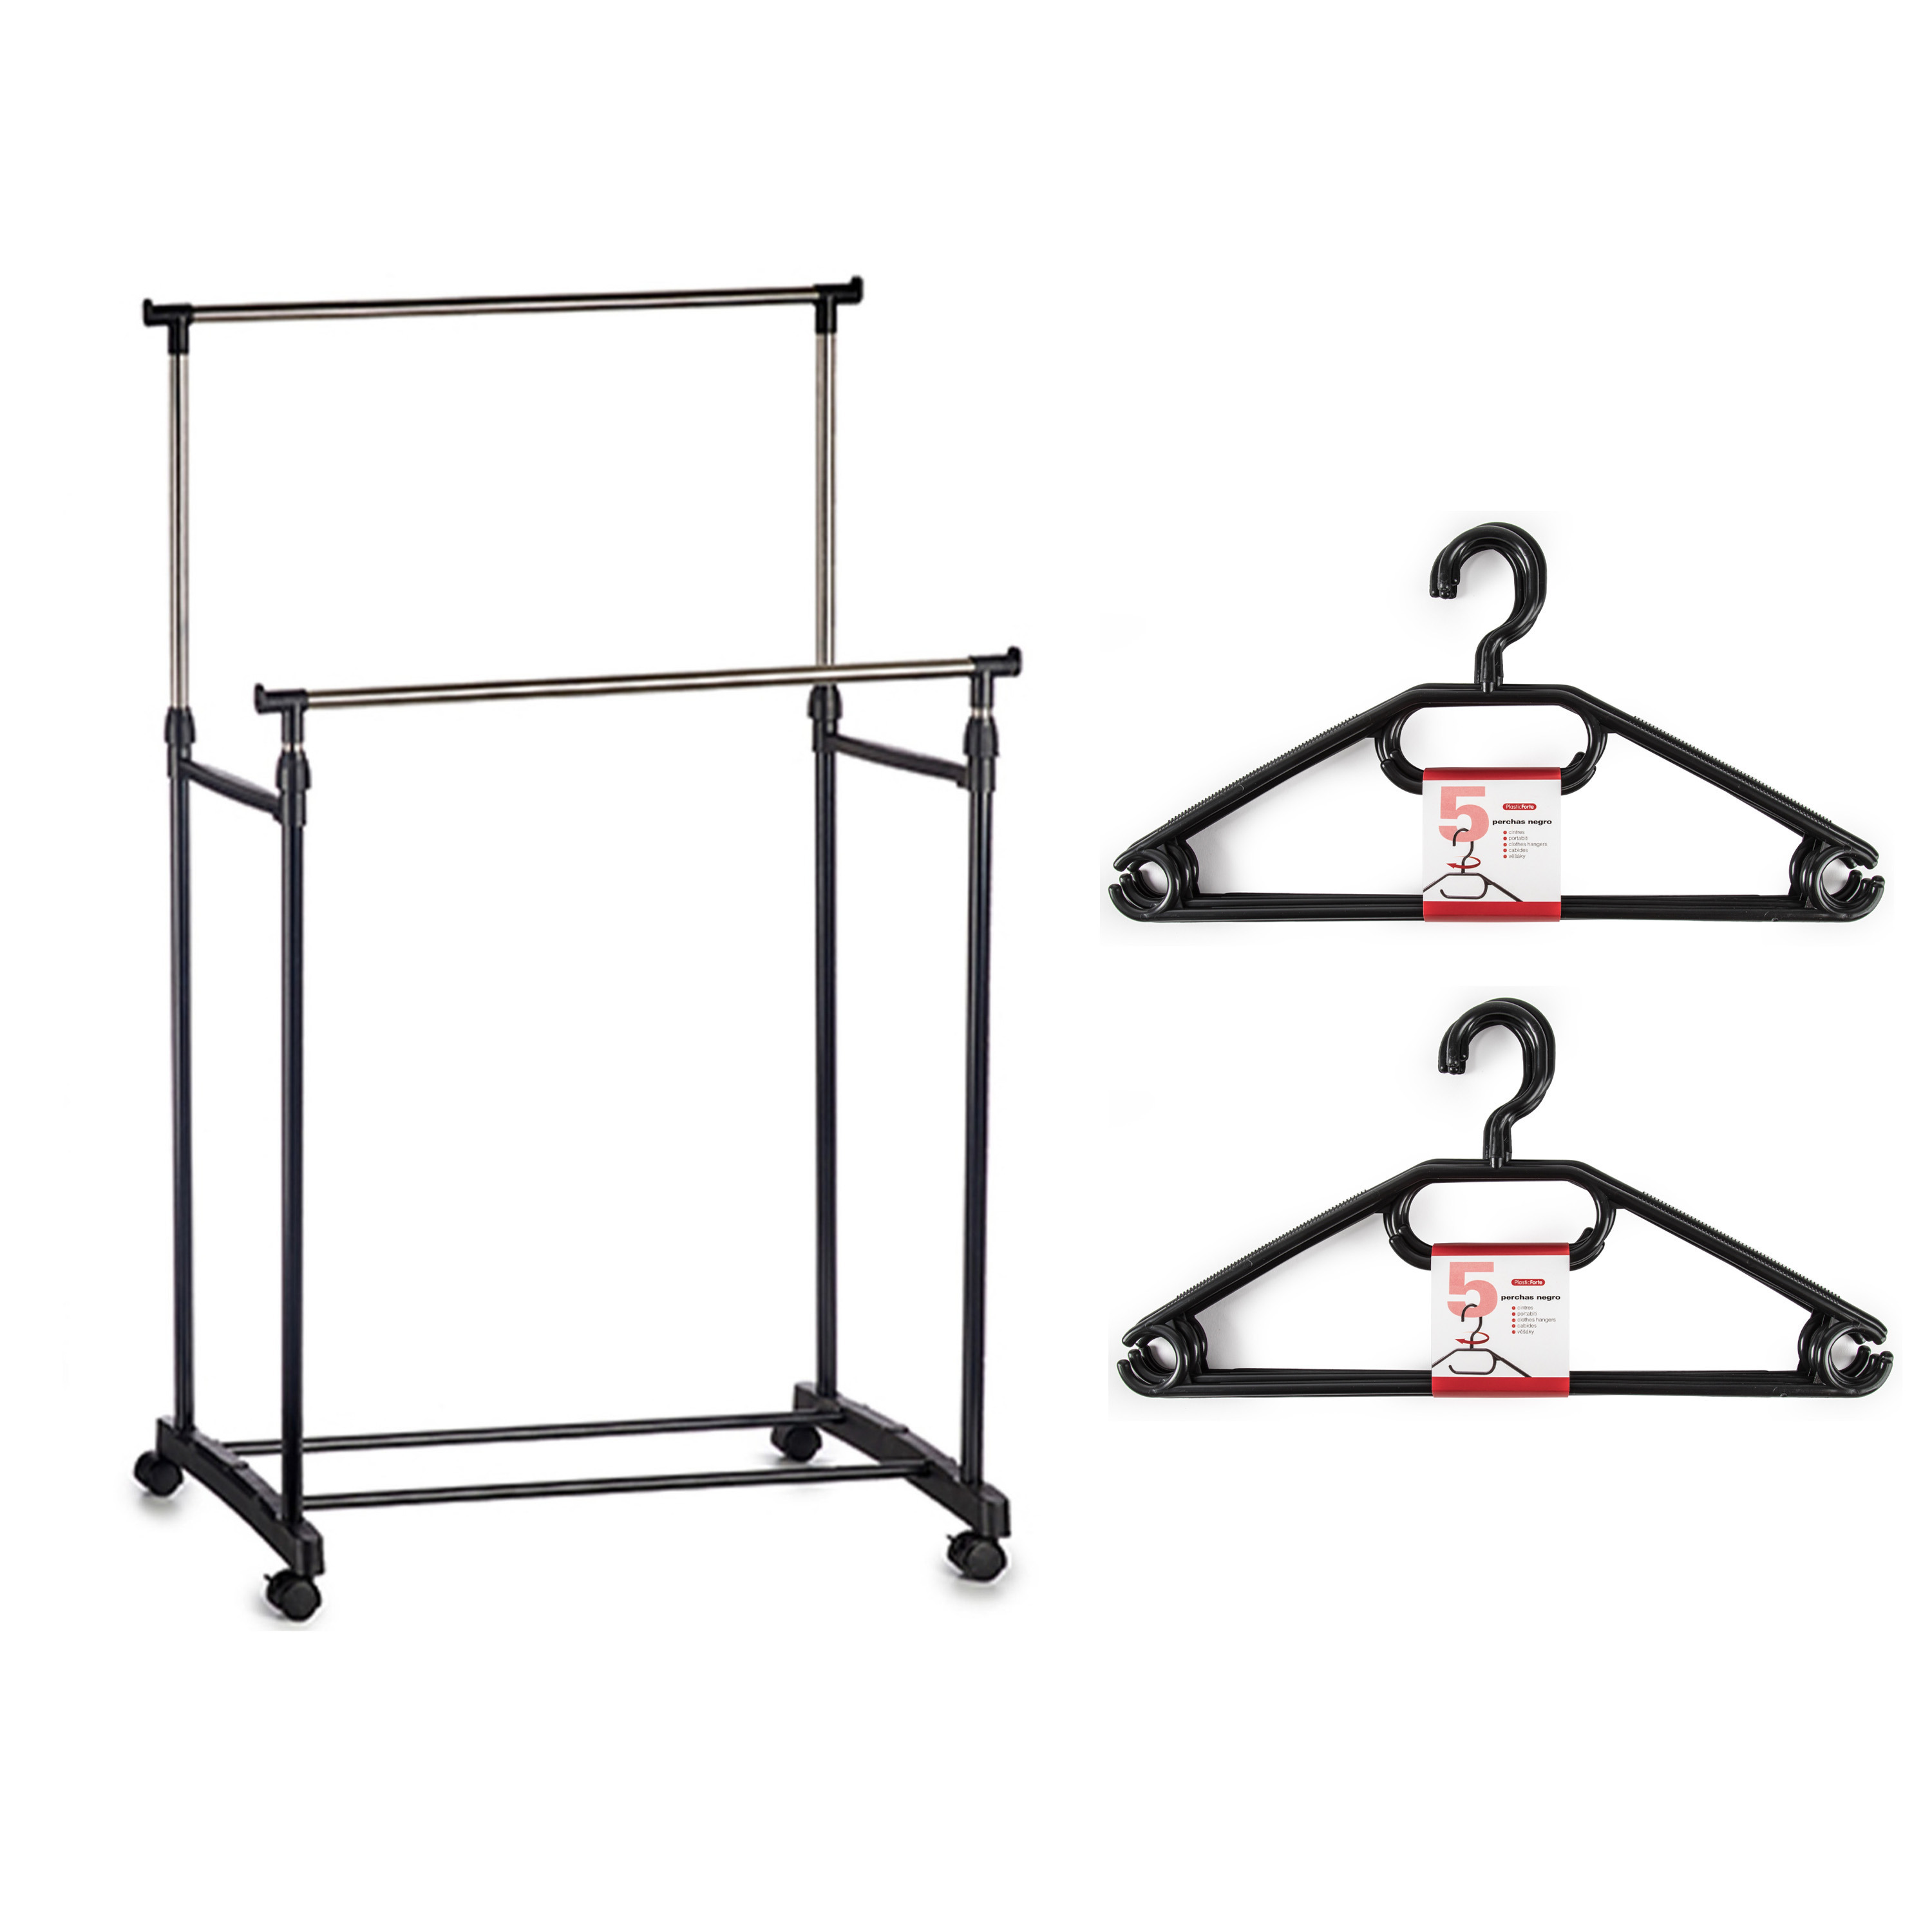 Kledingrek met kleding hangers dubbele stang kunststof-metaal zwart 80 x 42 x 160